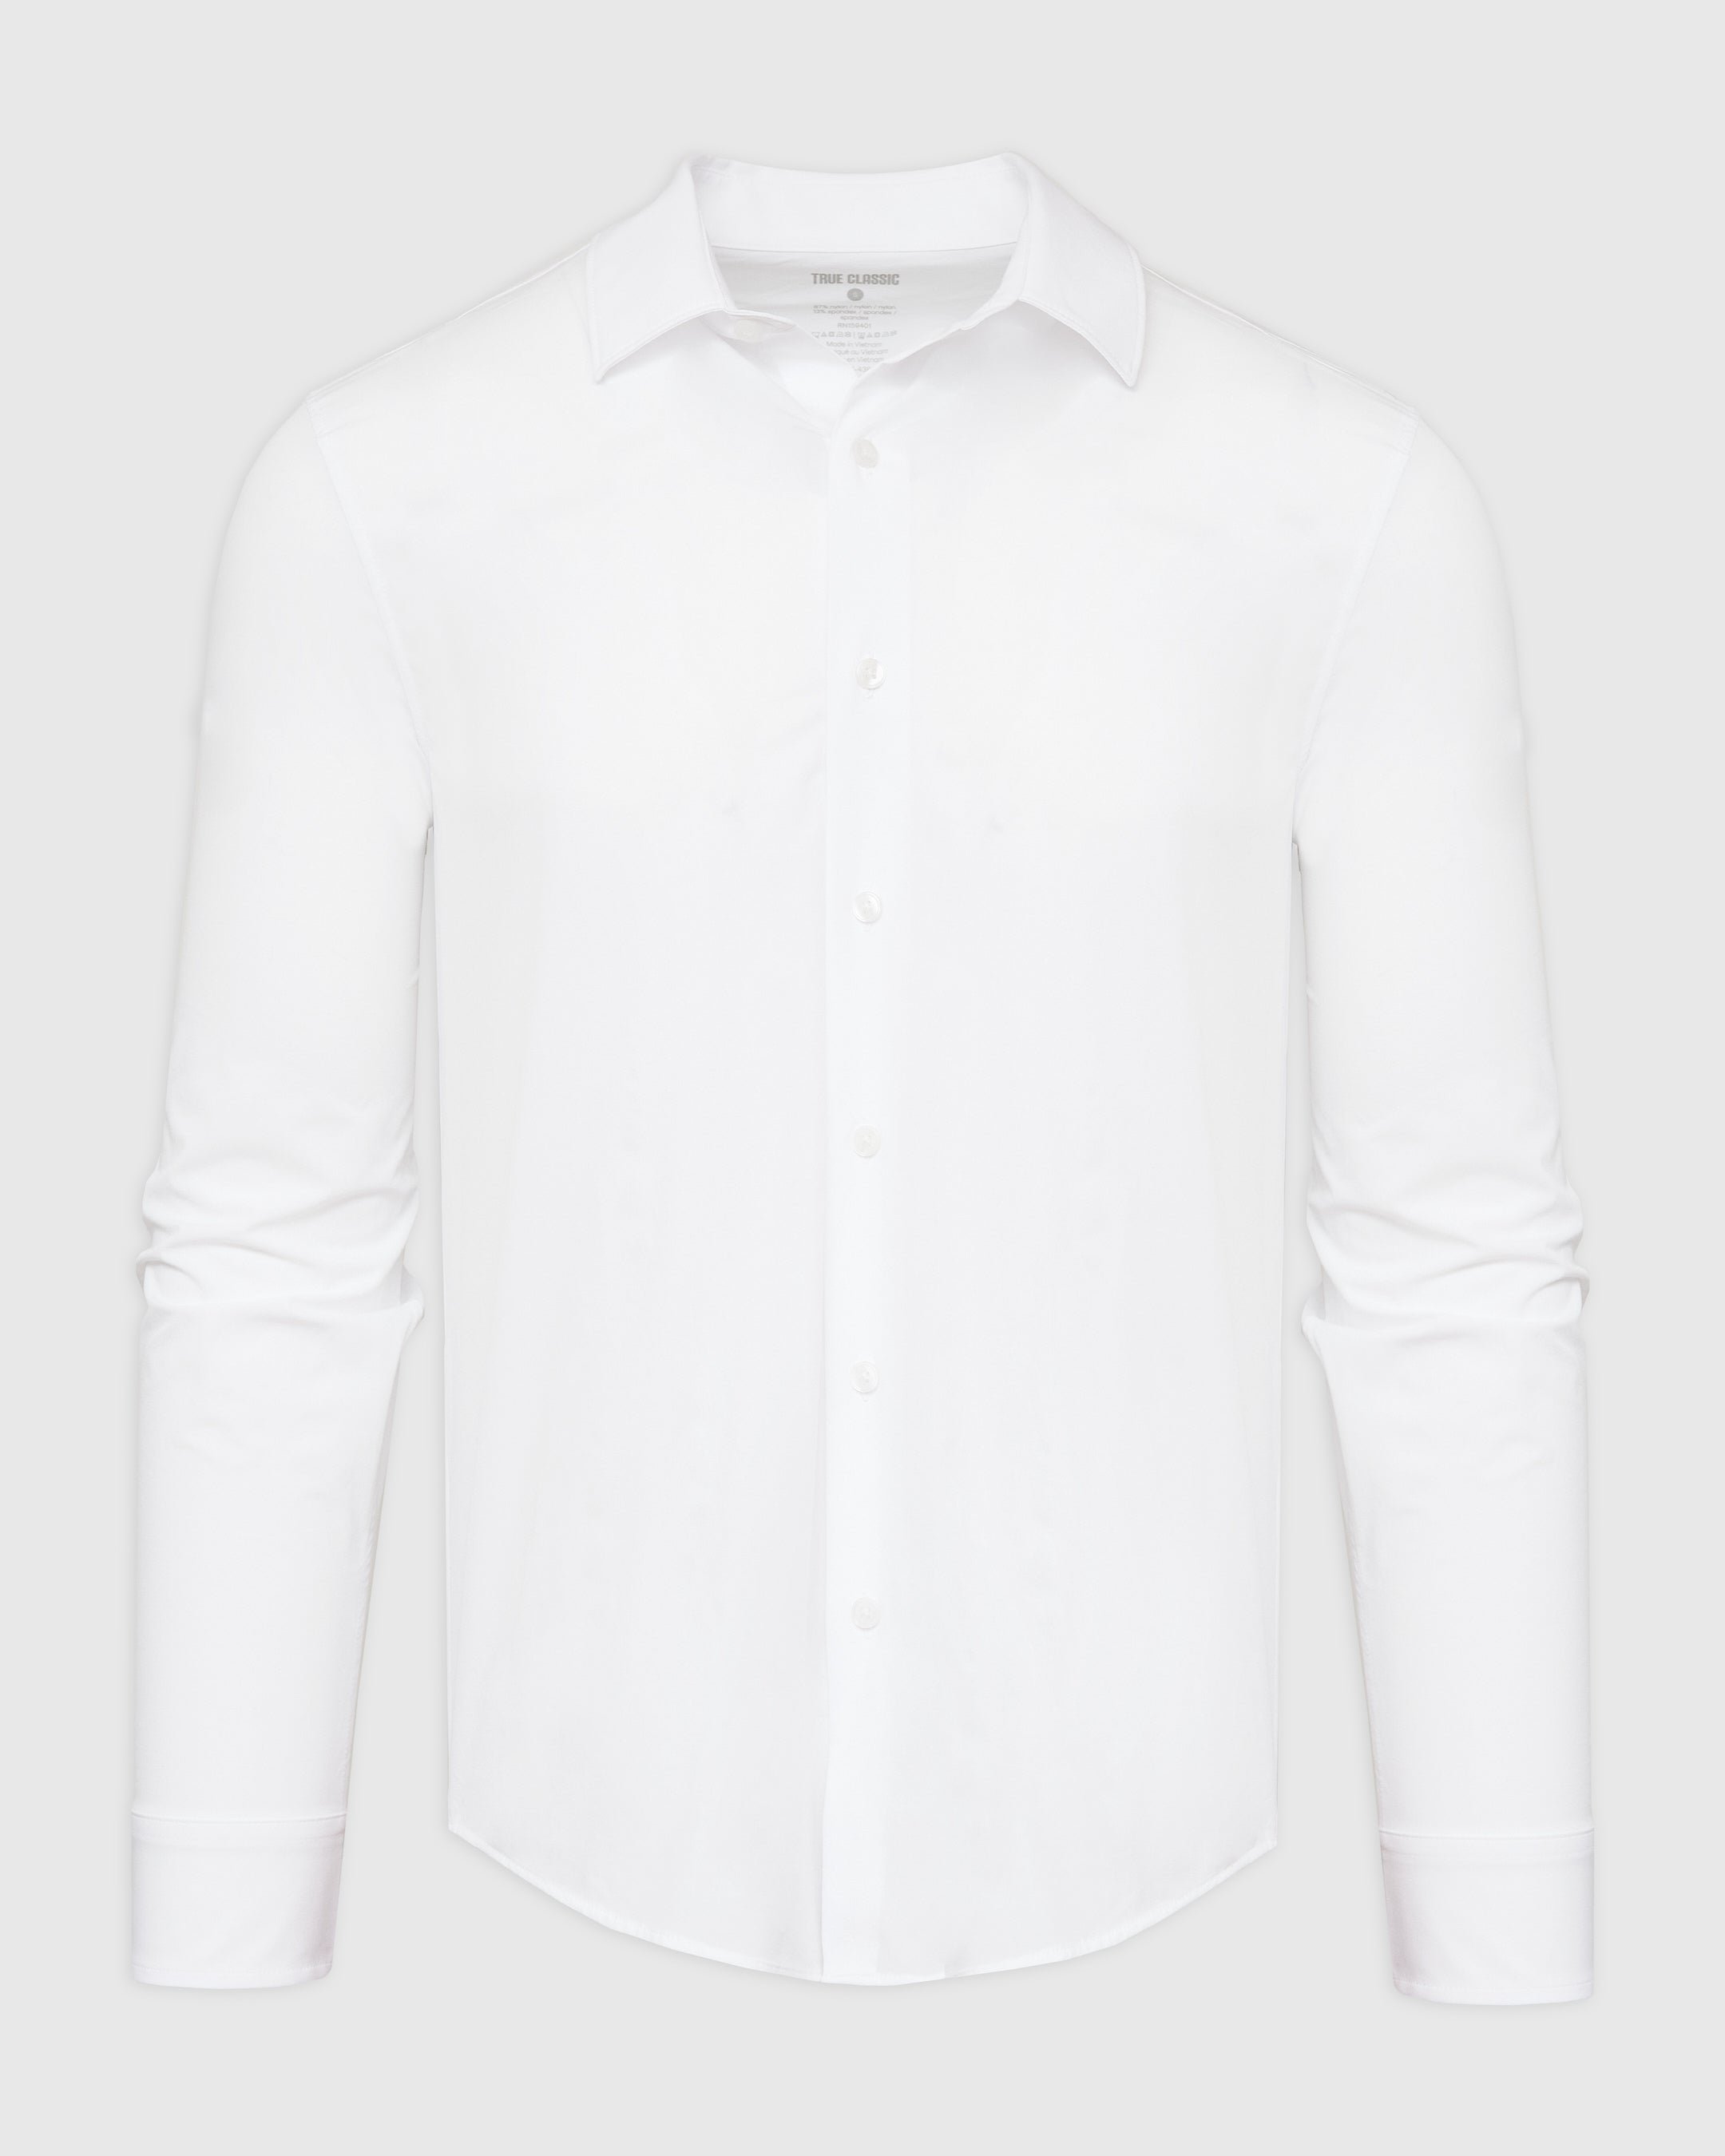 White Performance Lightweight Dress Shirt